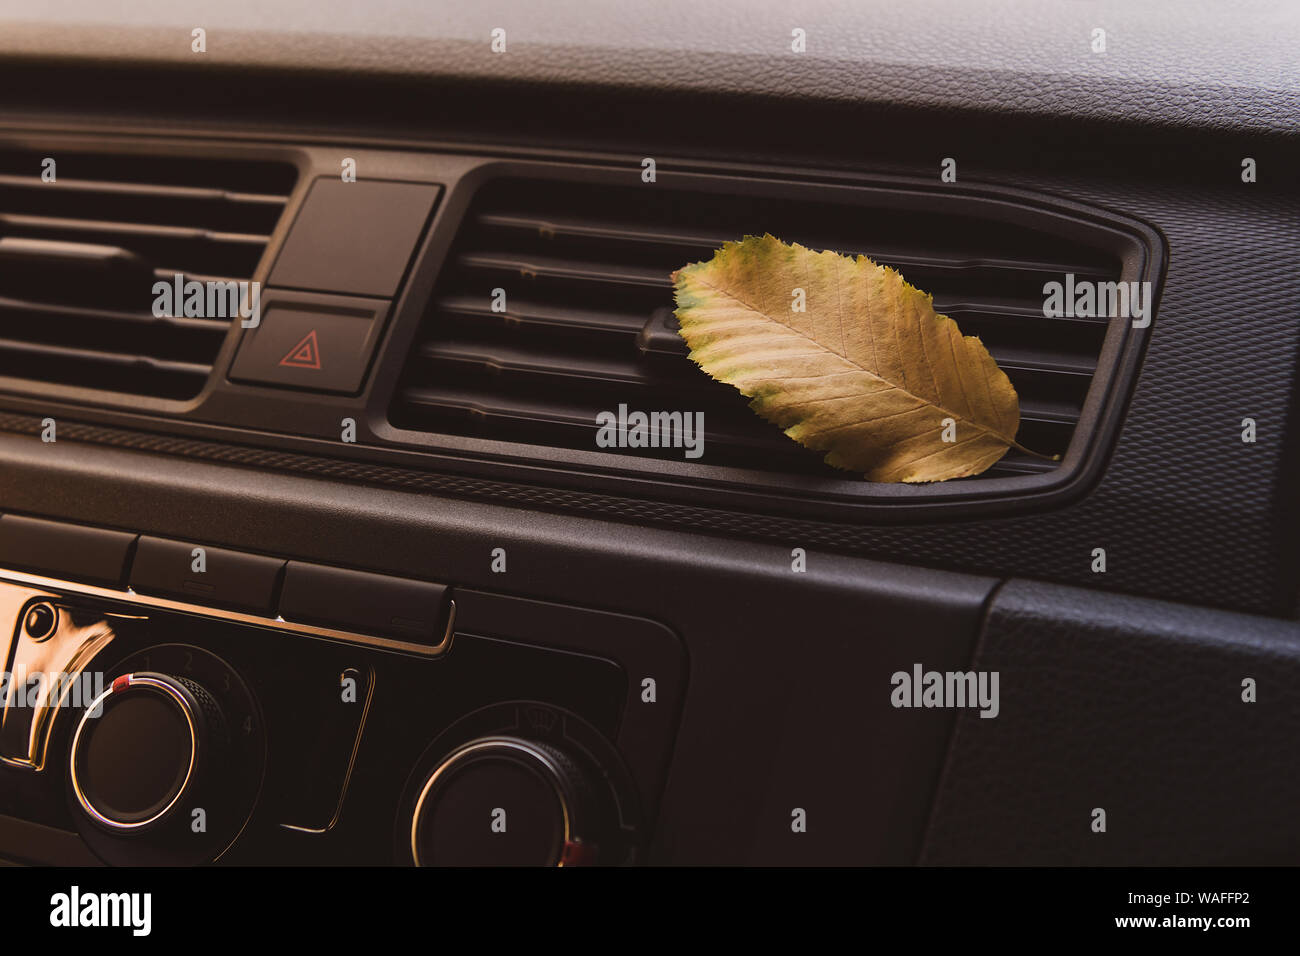 Une petite feuille d'or volé dans la voiture. Feuille jaune allongé sur le système de ventilation à l'intérieur de la voiture. Concept d'automne. Banque D'Images